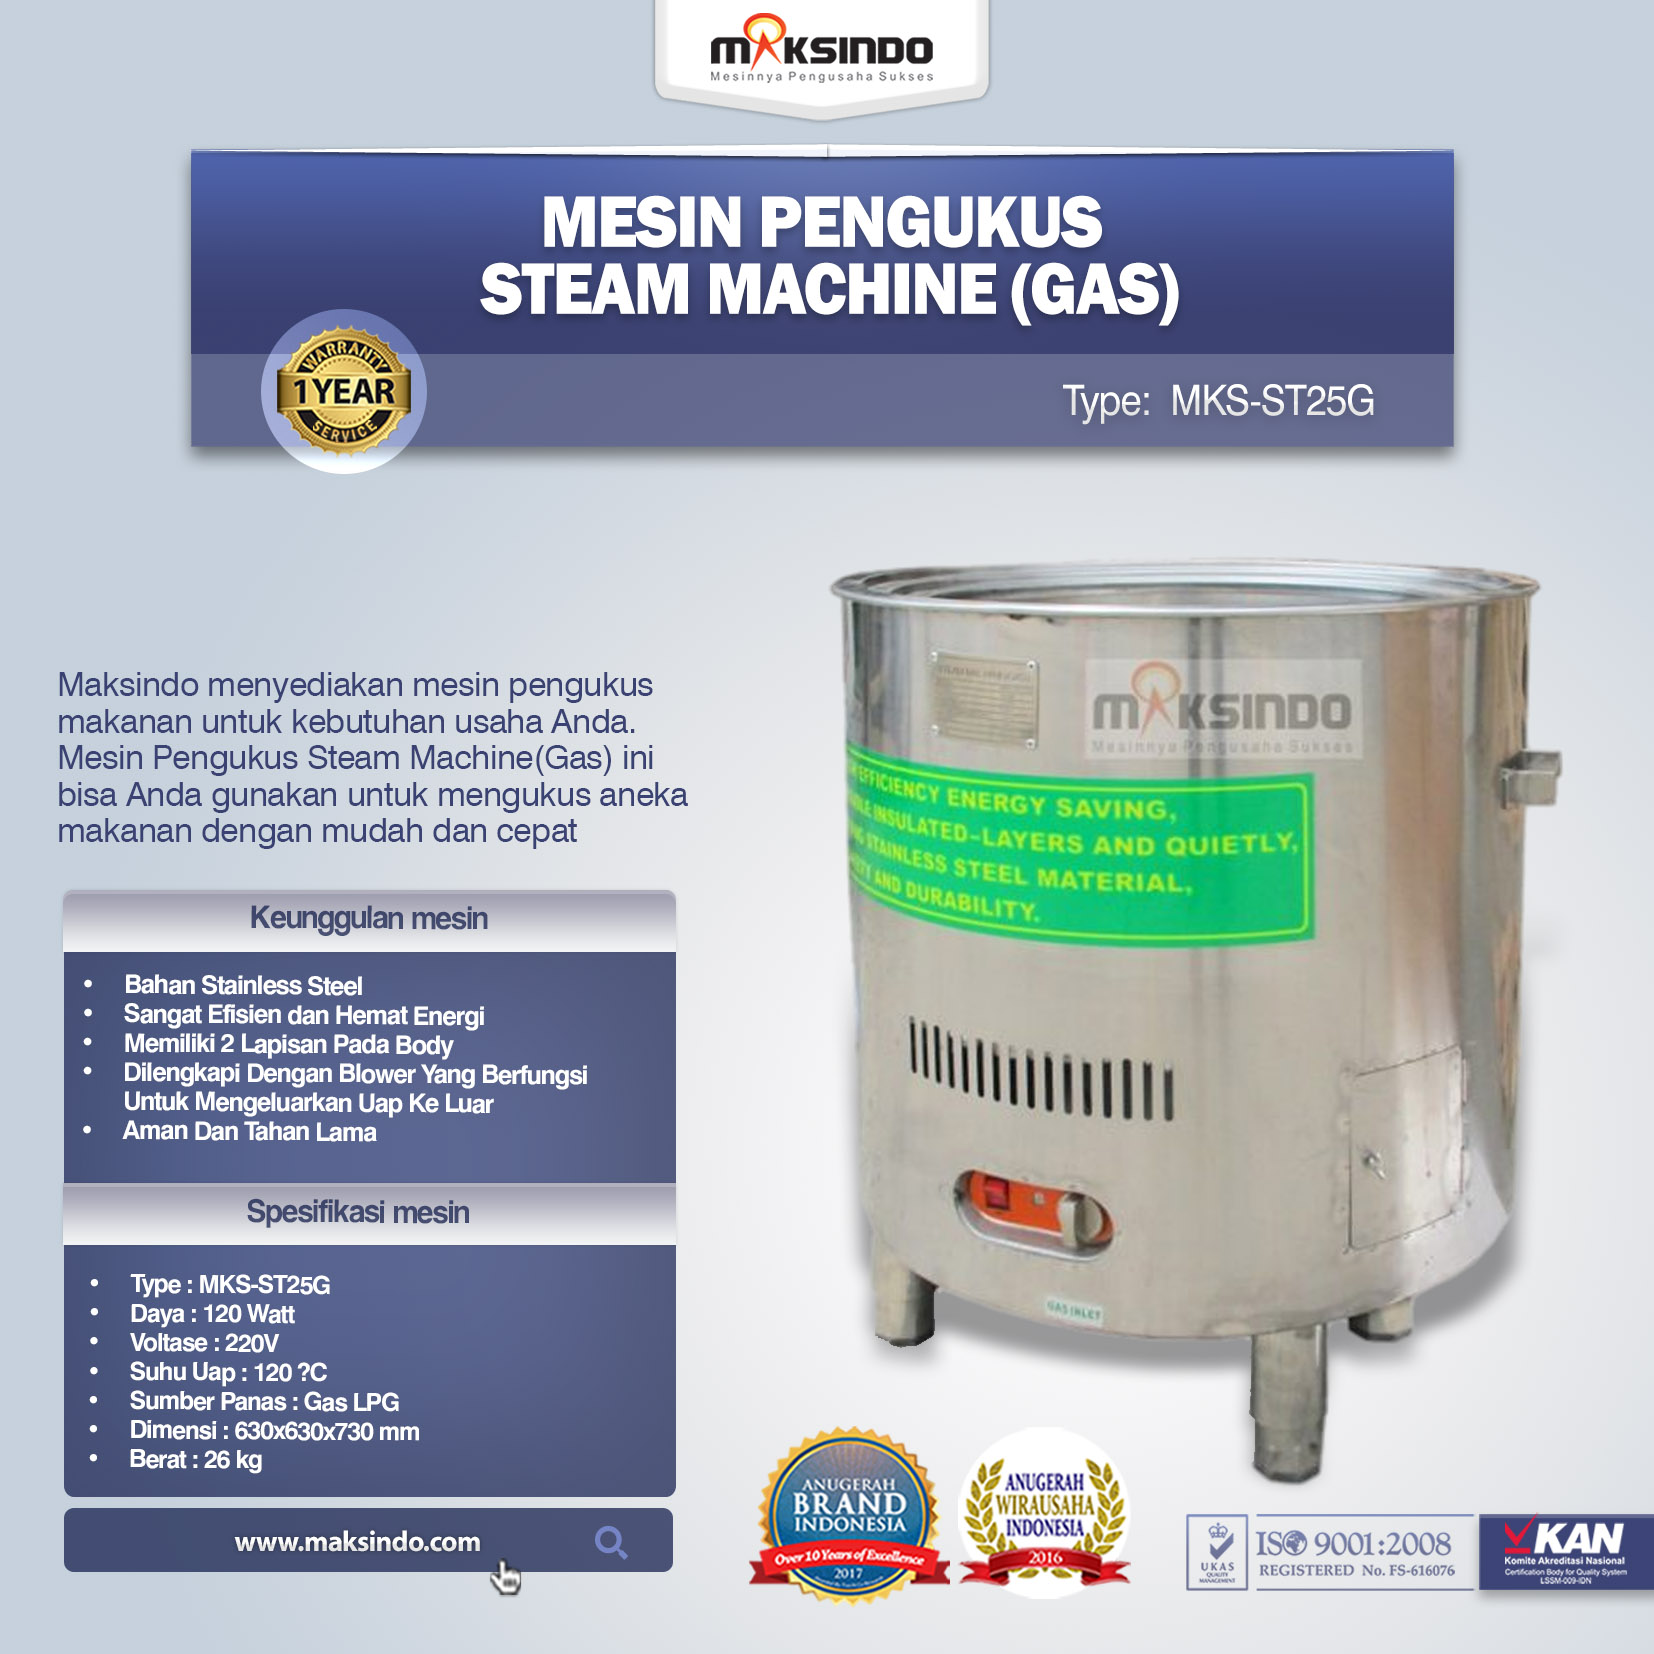 Jual Mesin Pengukus – Steam Machine (Gas) MKS-ST25G di Banjarmasin